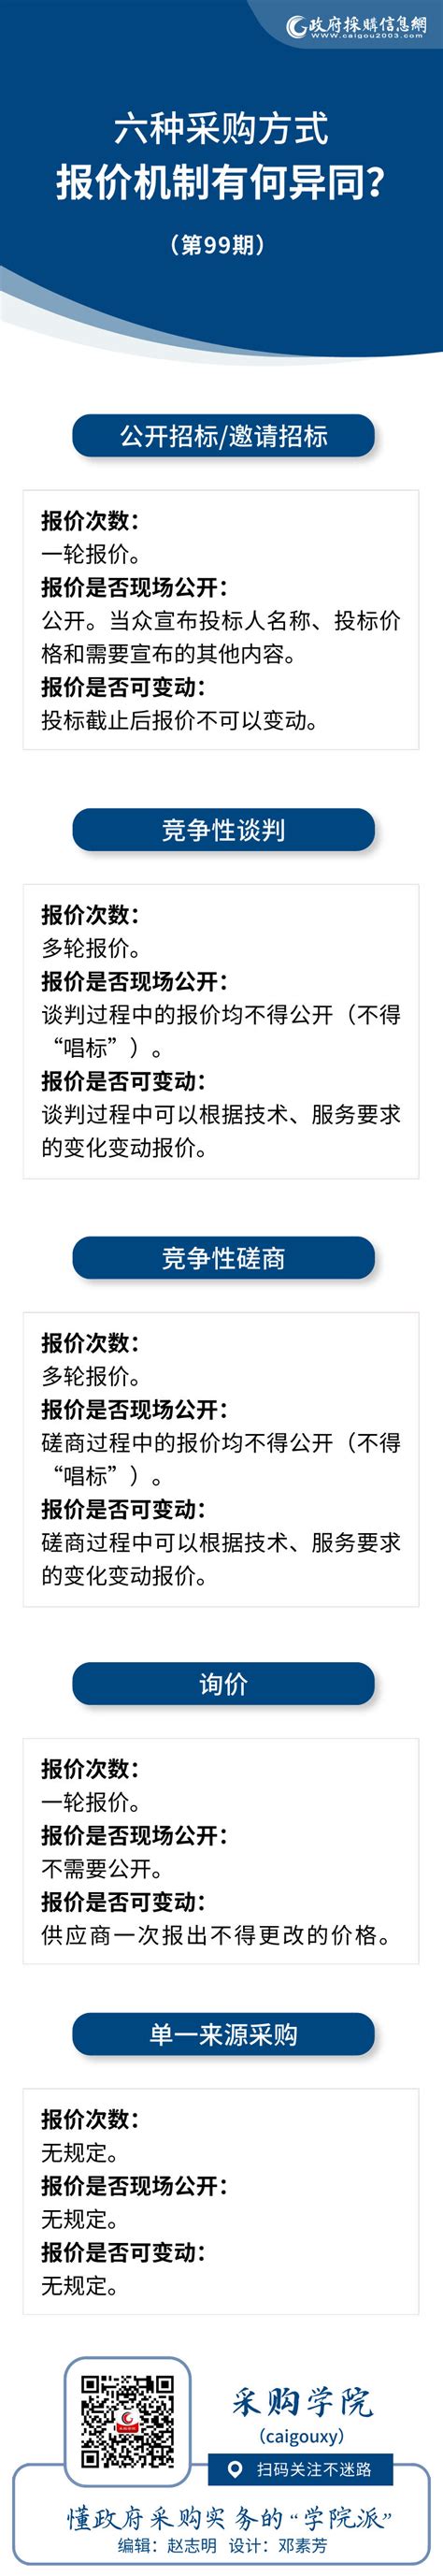 政府采购查询说明-上海大学采购与招标管理办公室